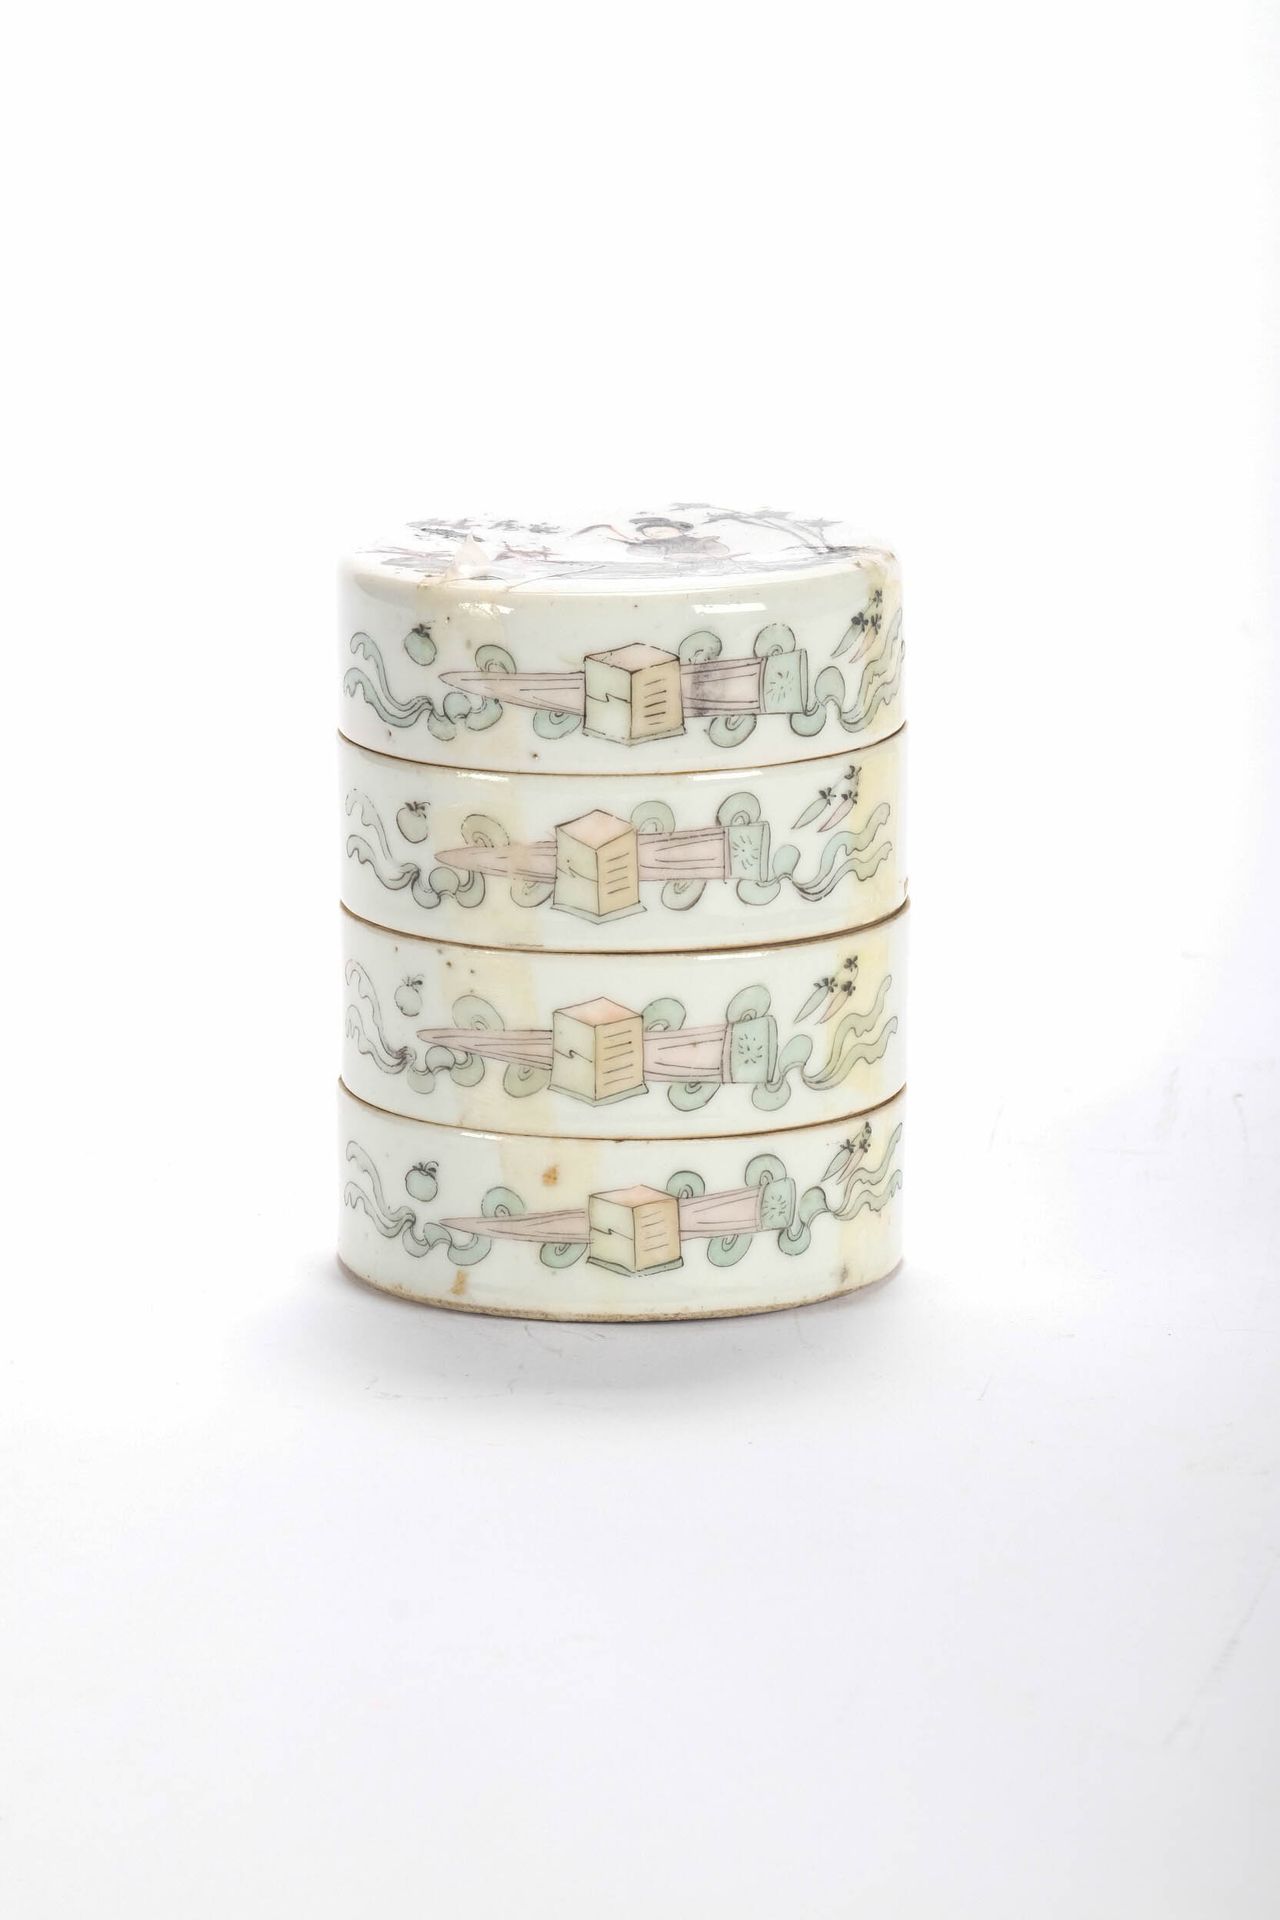 CHINE (CHINA, 中国) Pot en porcelaine à 4 compartiments. H 11 cm D 8 cm. XIX